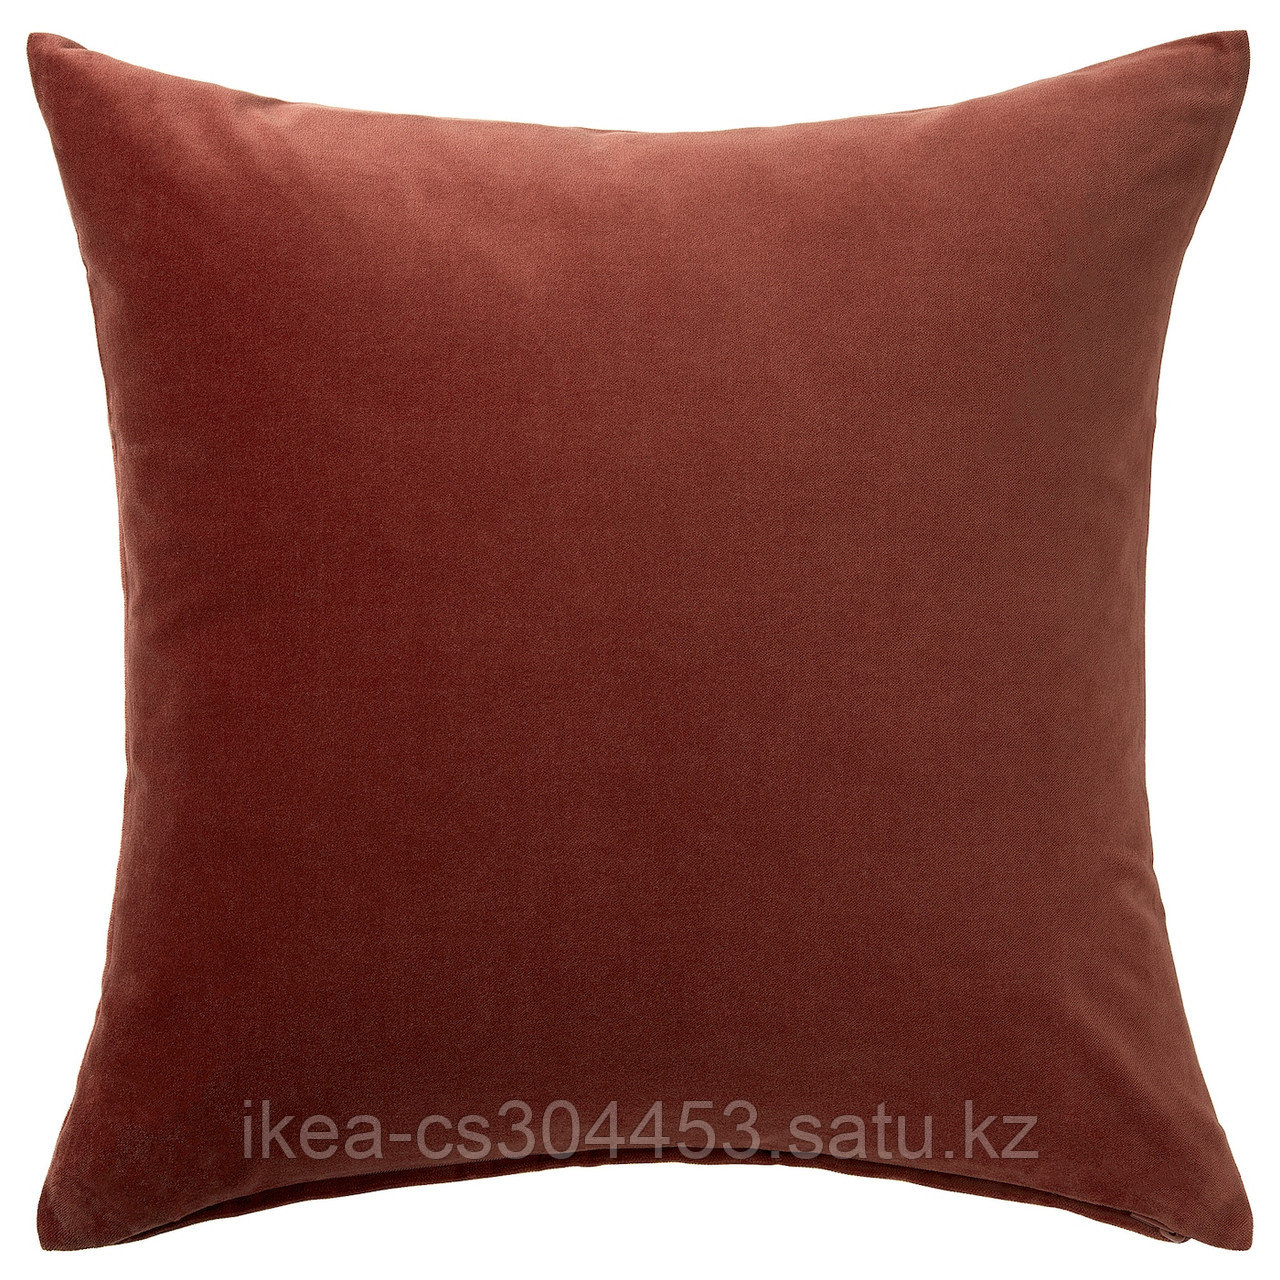 SANELA САНЕЛА Чехол на подушку, красный/коричневый, 50x50 см